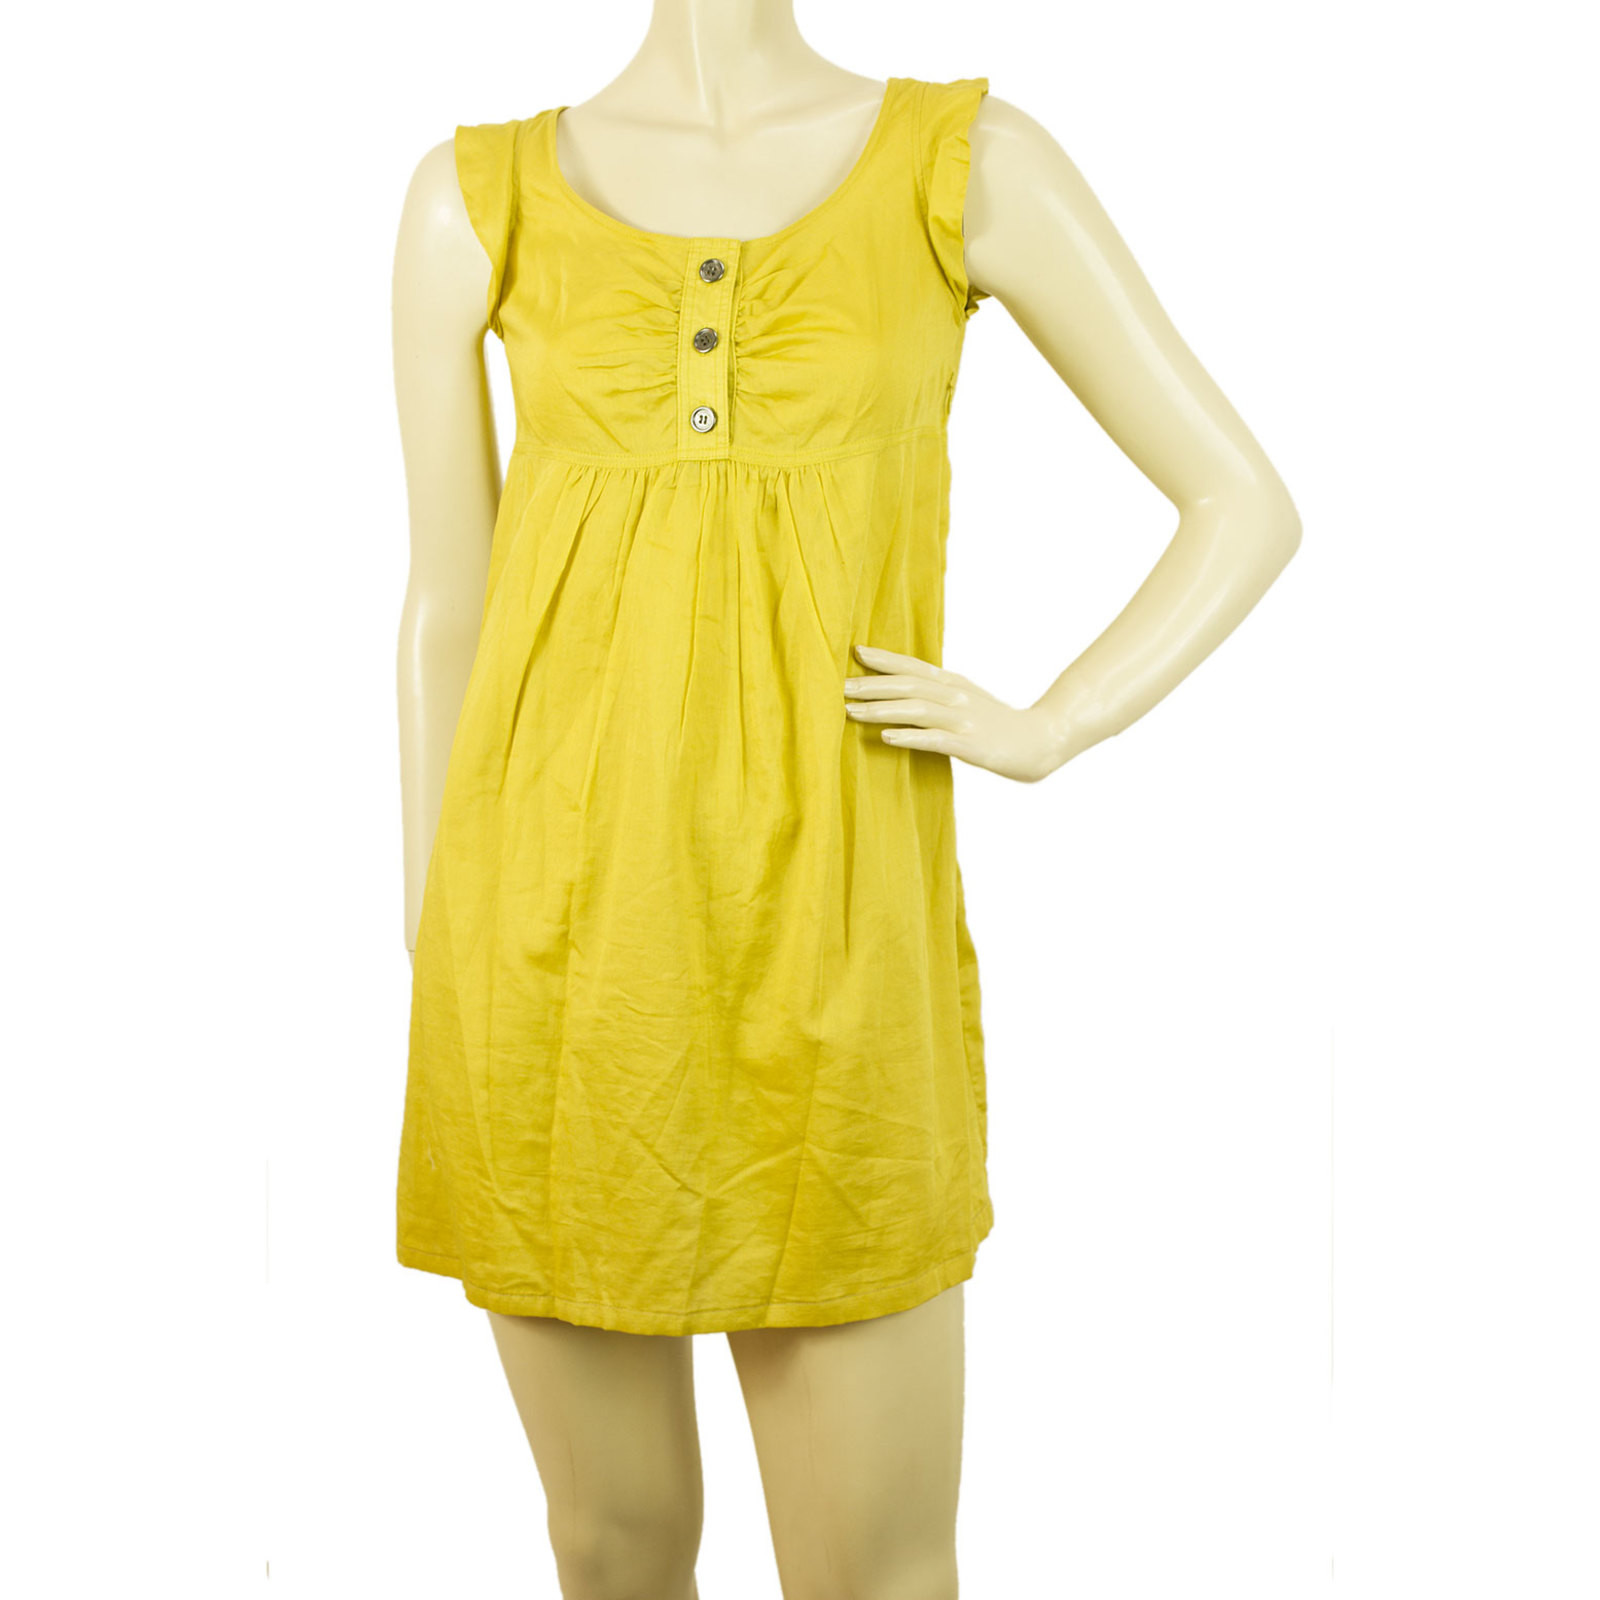 Burberry Kleid - Second Hand Burberry Kleid gebraucht kaufen für 175€  (1663772)